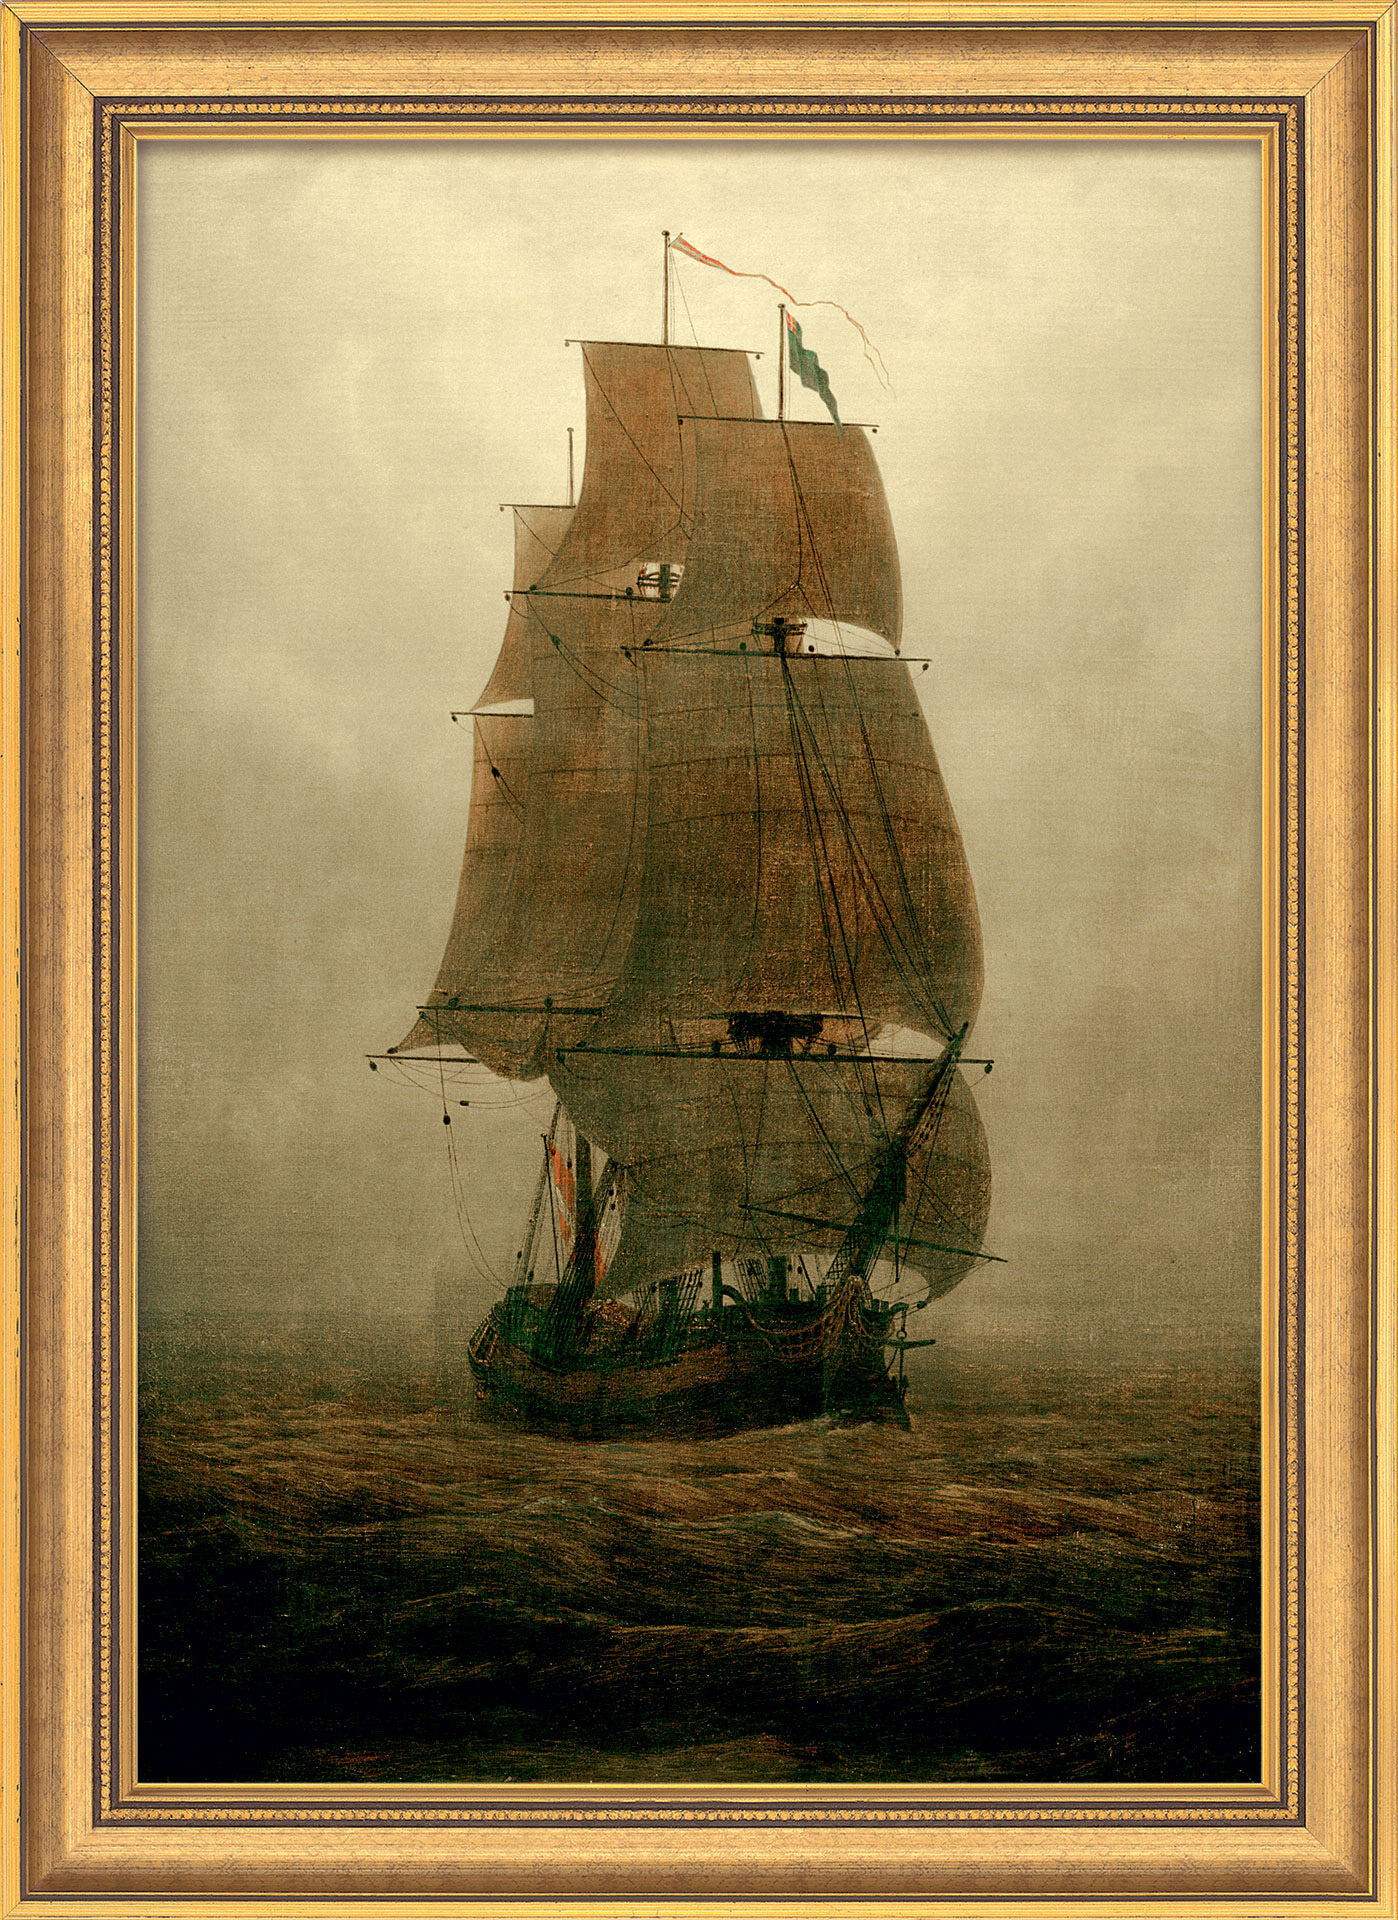 Tableau "Voilier dans le brouillard" (1815), encadré von Caspar David Friedrich